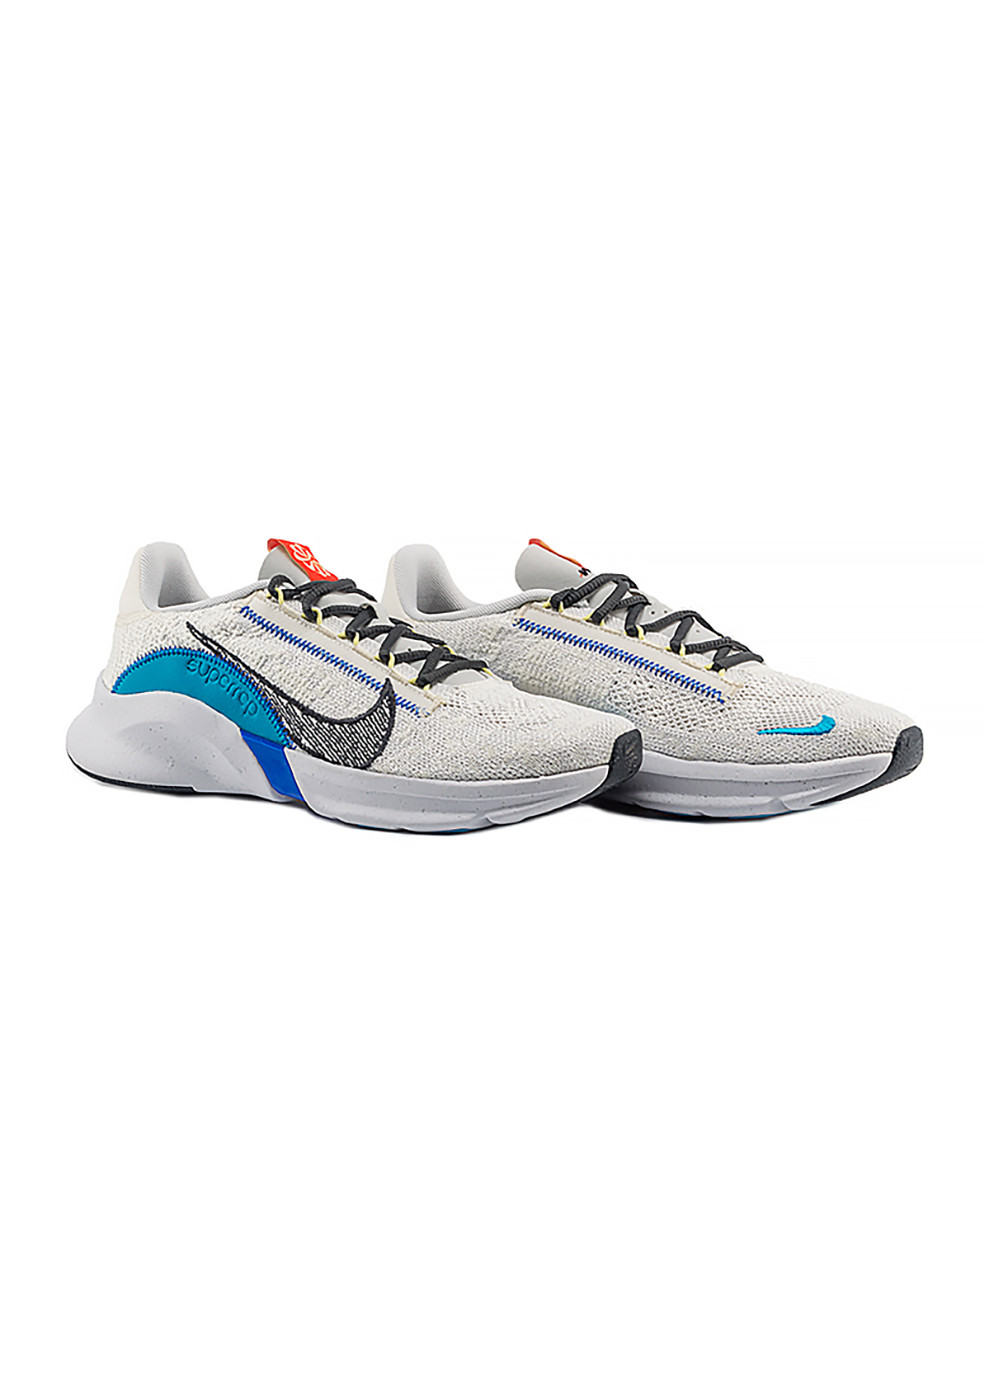 Цветные демисезонные мужские кроссовки m superrep go 3 nn fk комбинированный Nike